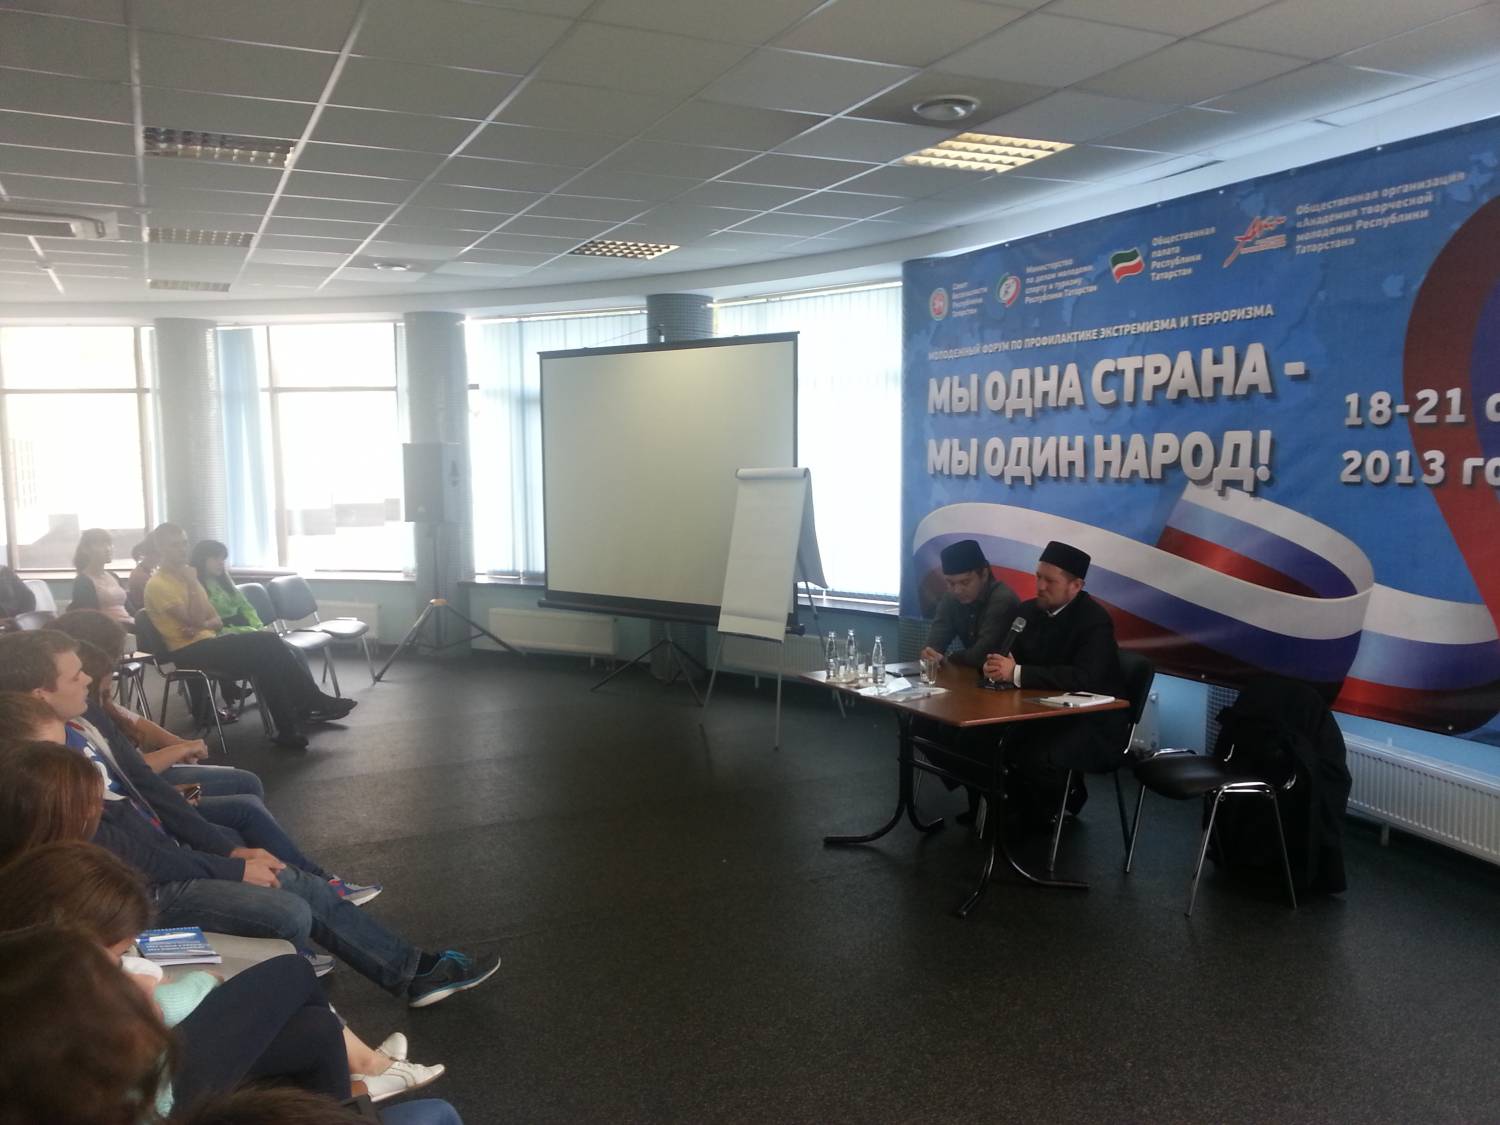 Илдар Баязитов выступил на Форуме "Мы одна страна - Мы один народ!"